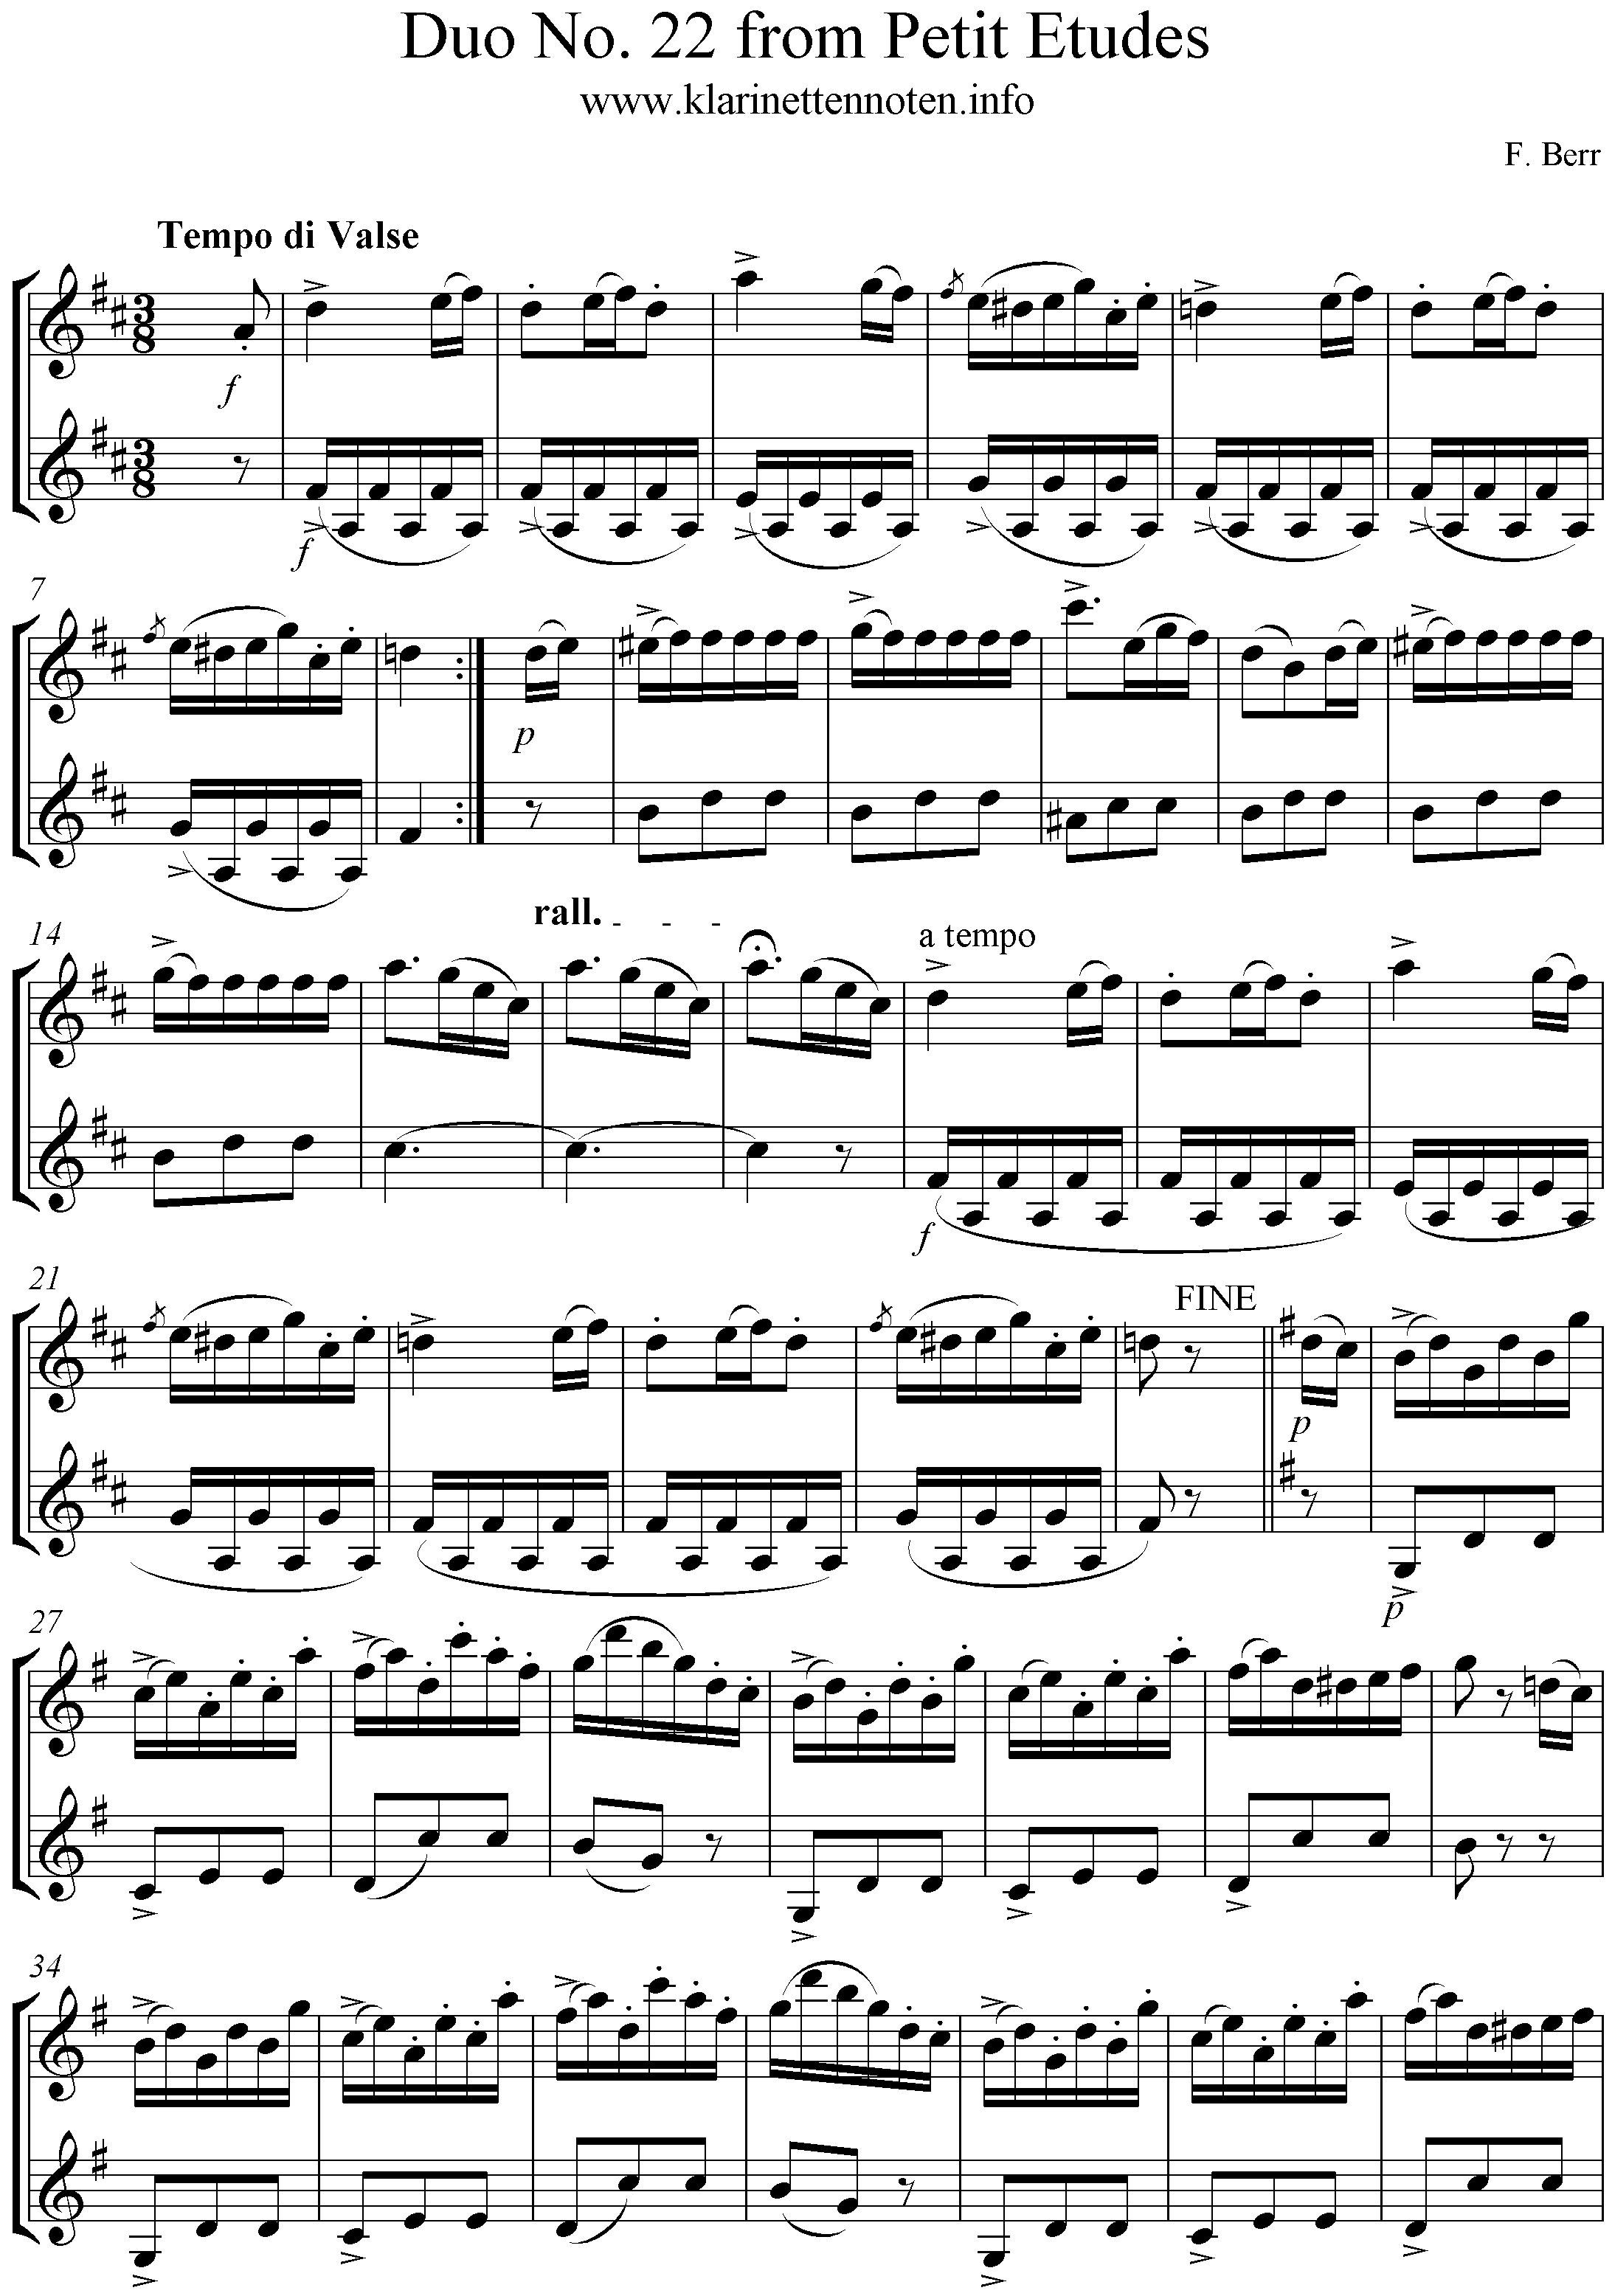 F. Berr, Petit Etudes Duo No. 22 for  CLarinet, Klarinette